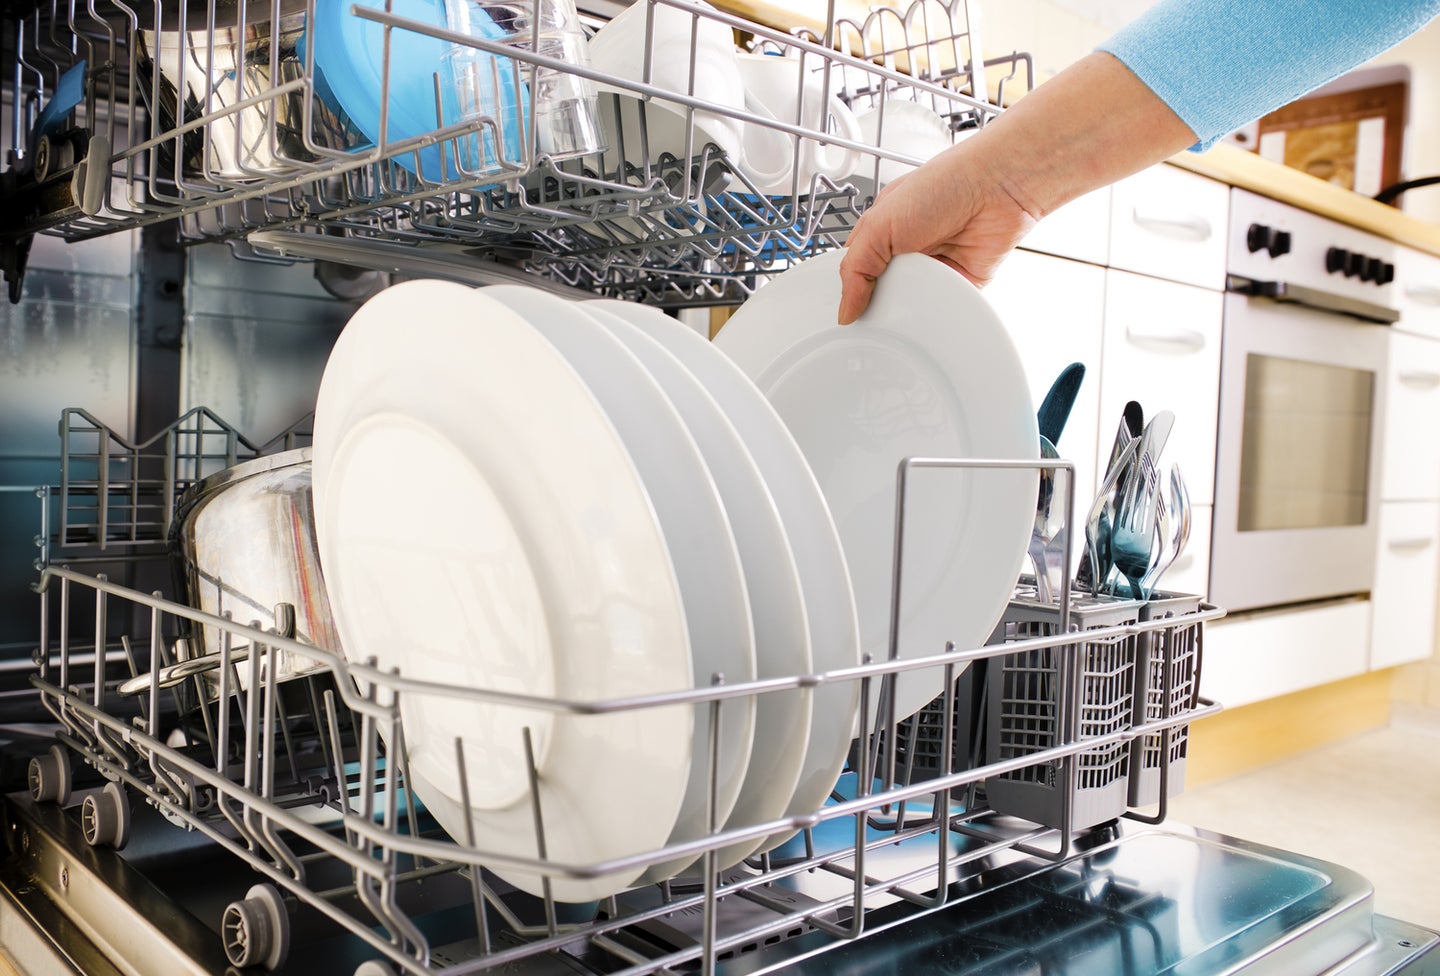 Hand loading dishwasher